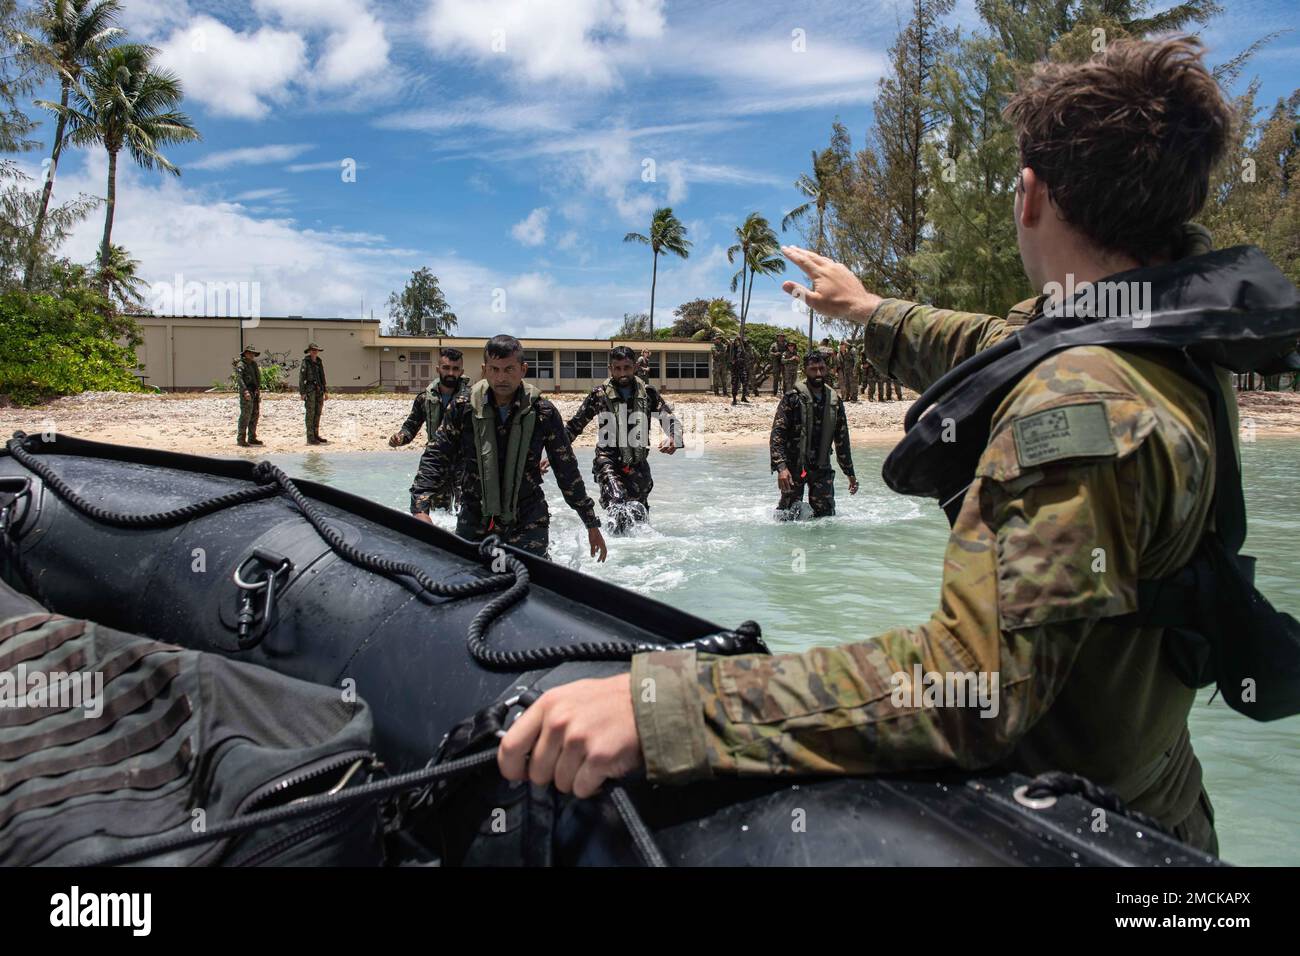 BAHÍA DE KANEOHE, Hawái (6 de julio de 2022) – Soldado del Ejército Australiano Pte. Jackson Pitts, asignado al 2nd.º Batallón, Regimiento Real Australiano (Amphib), pelotón de embarcaciones pequeñas, instruye a los Marines de Sri Lanka, asignados al 1st.º Batallón de Infantería de Marina, para un ejercicio de hombre al agua en un Zodiaco F470.º durante el Borde del Pacífico (RIMPAC) 2022, julio de 6. Veintiséis naciones, 38 barcos, cuatro submarinos, más de 170 aviones y 25.000 personal participan en RIMPAC del 29 de junio al 4 de agosto en las islas hawaianas y el sur de California y sus alrededores. El ejercicio marítimo internacional más grande del mundo, RIMPAC proporciona una t única Foto de stock